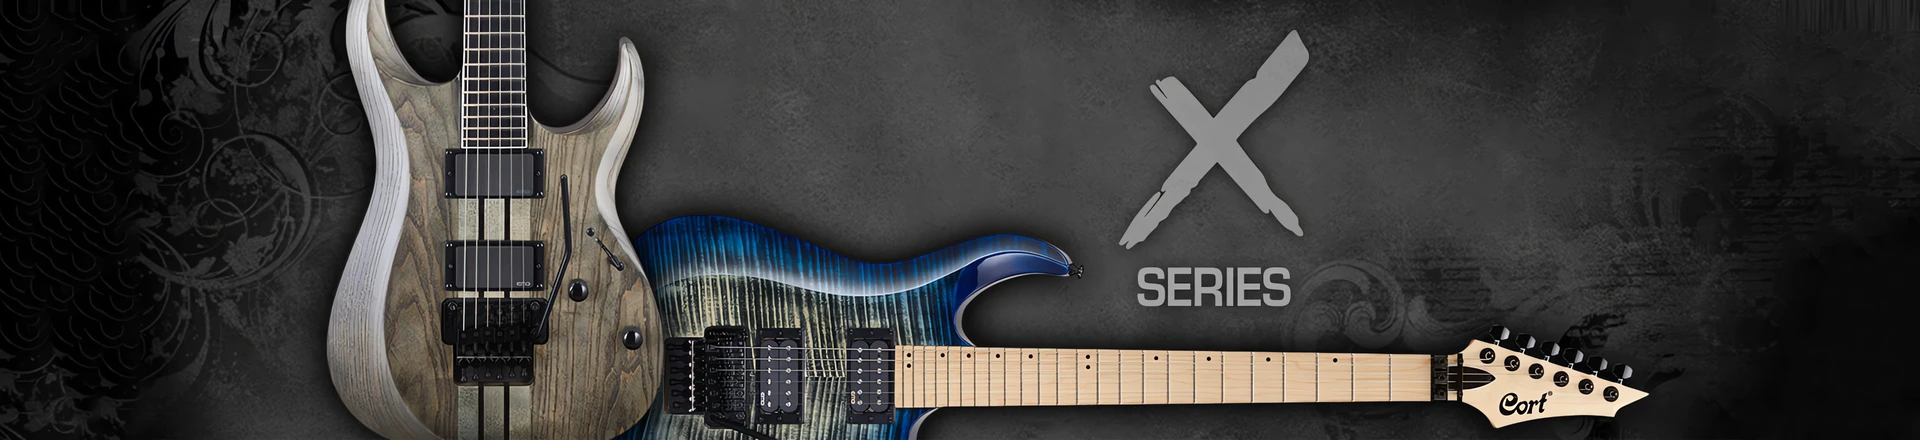 Nadchodzi Cort X500 - Nowa odsłona flagowej serii gitar 